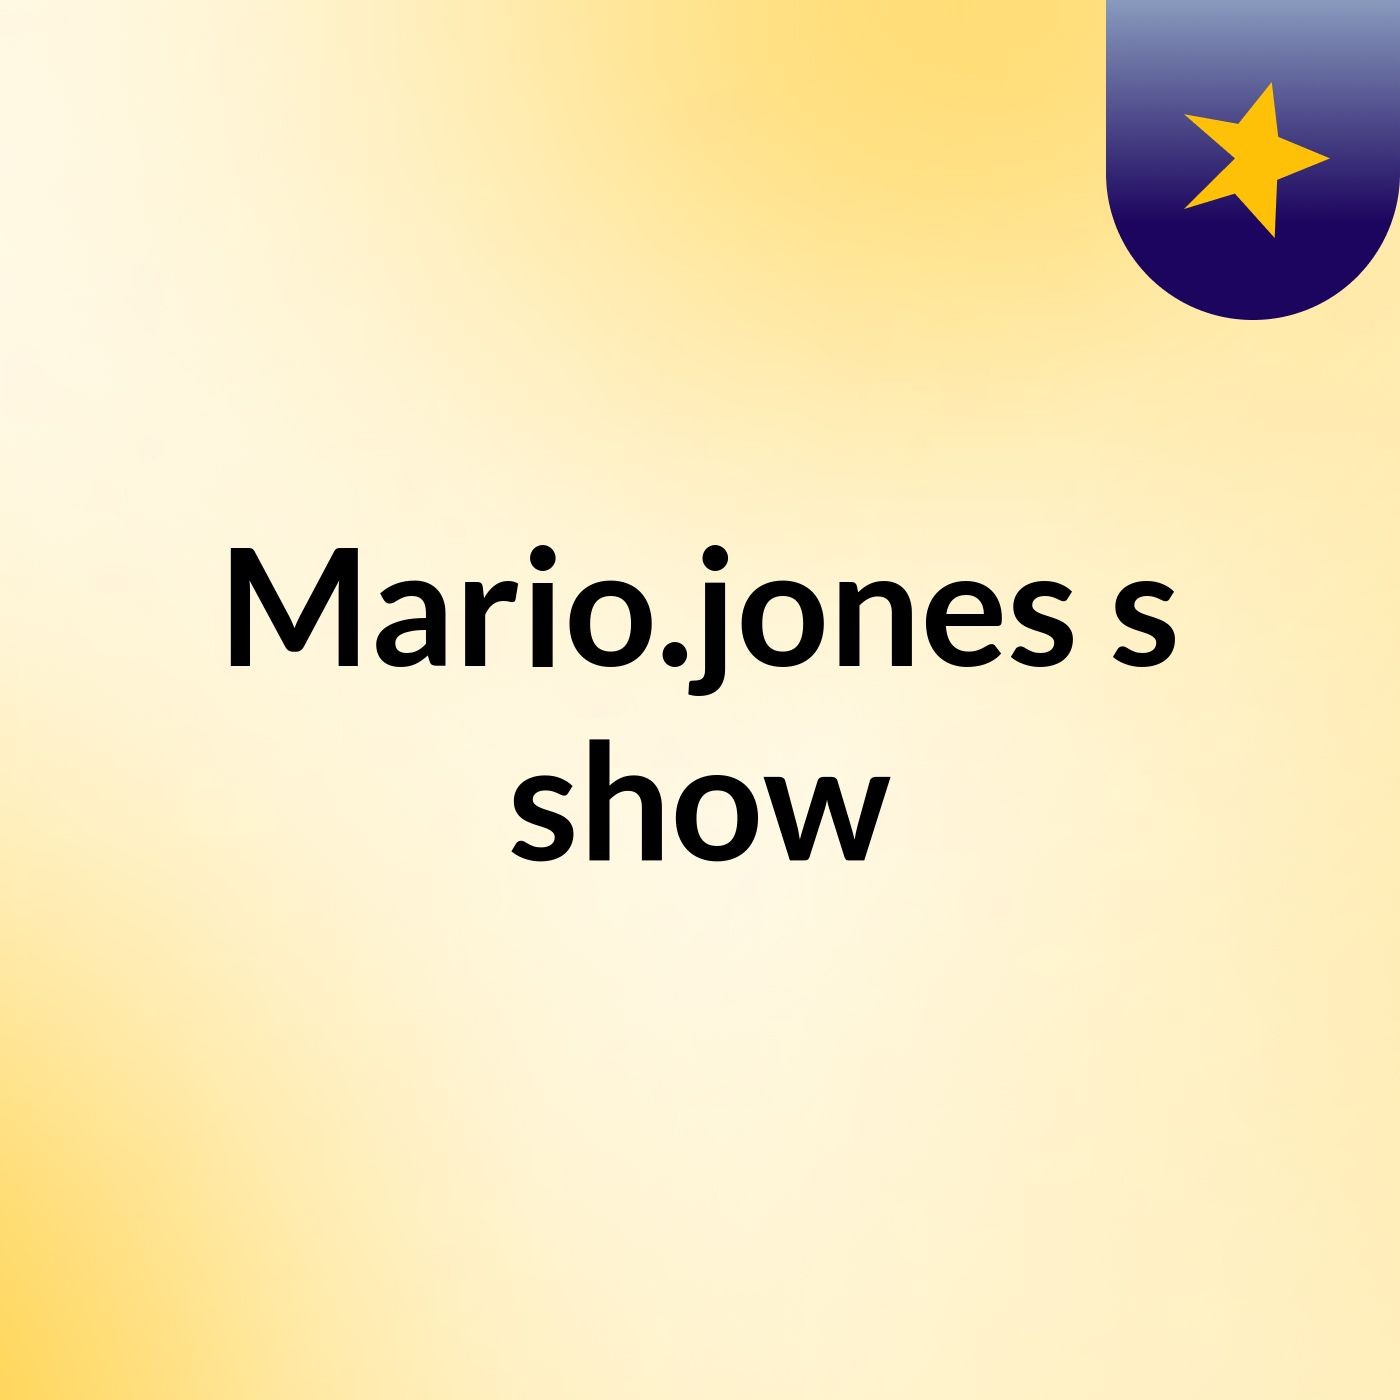 Mario.jones's show